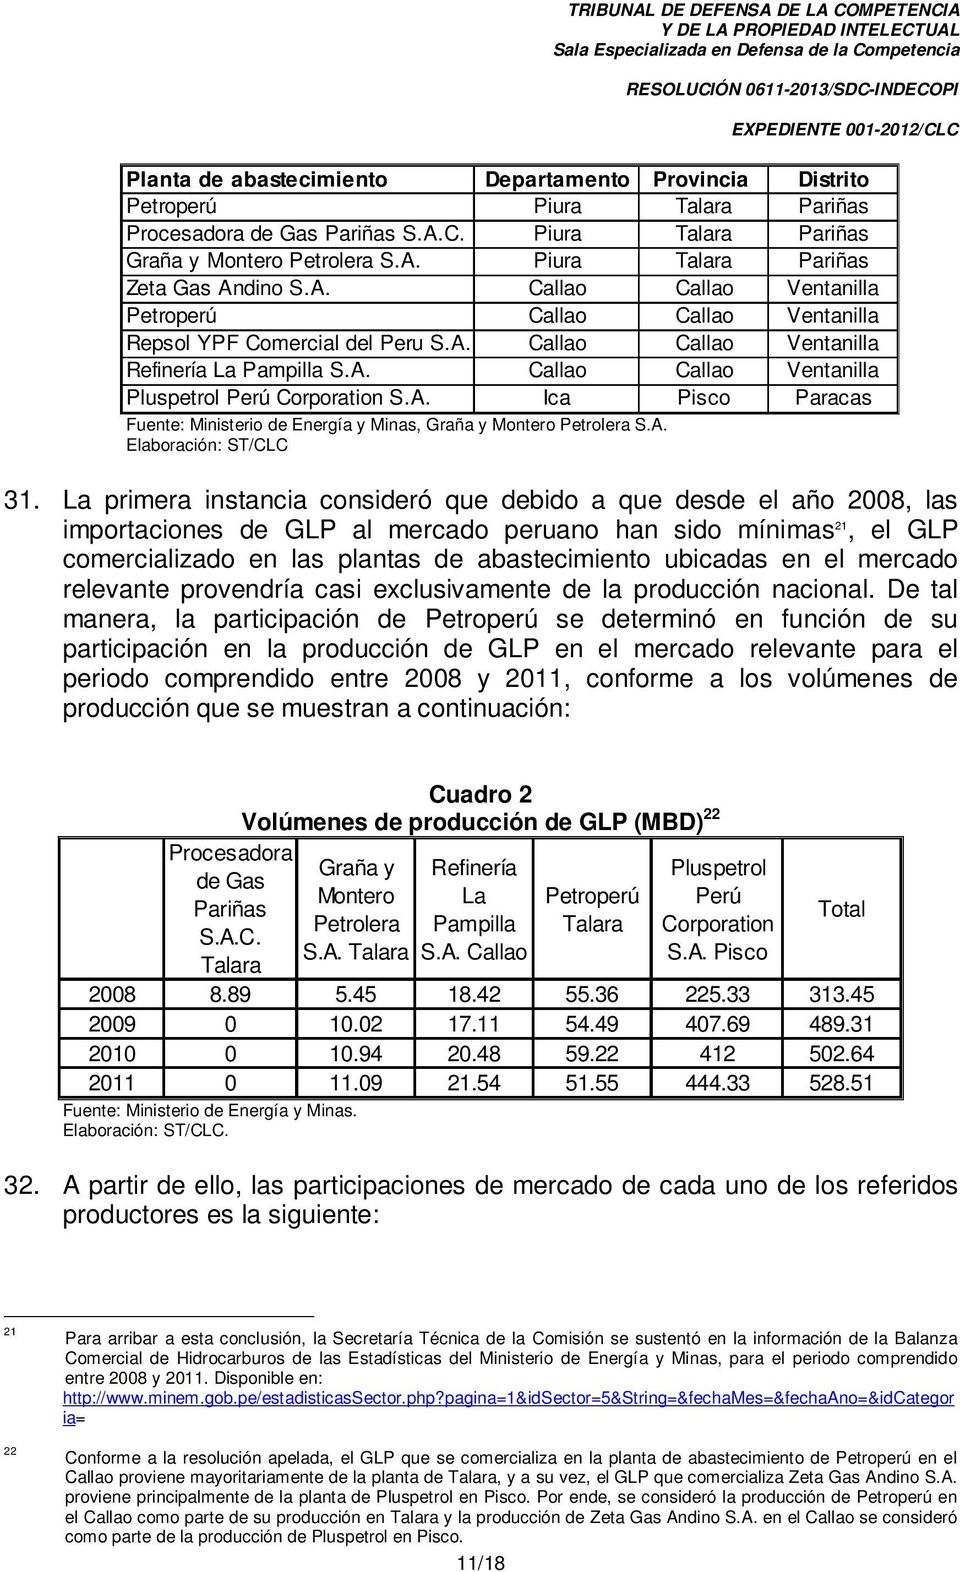 A. Ica Pisco Paracas Fuente: Ministerio de Energía y Minas, Graña y Montero Petrolera S.A. Elaboración: ST/CLC 31.